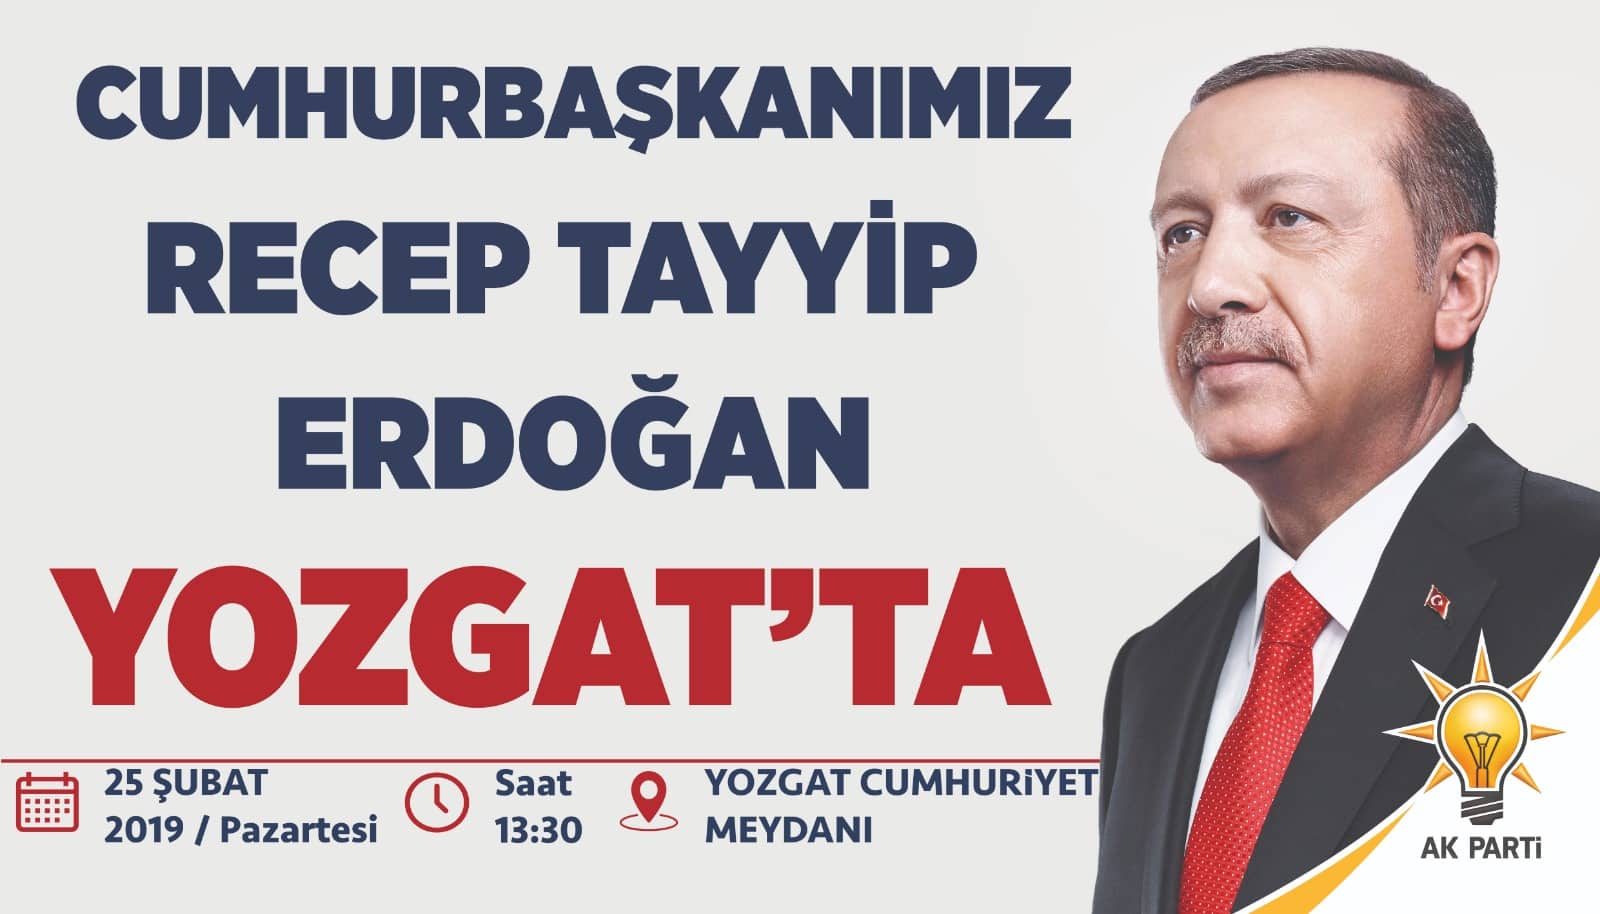 Cumhurbaşkanı Yozgat'a geliyor